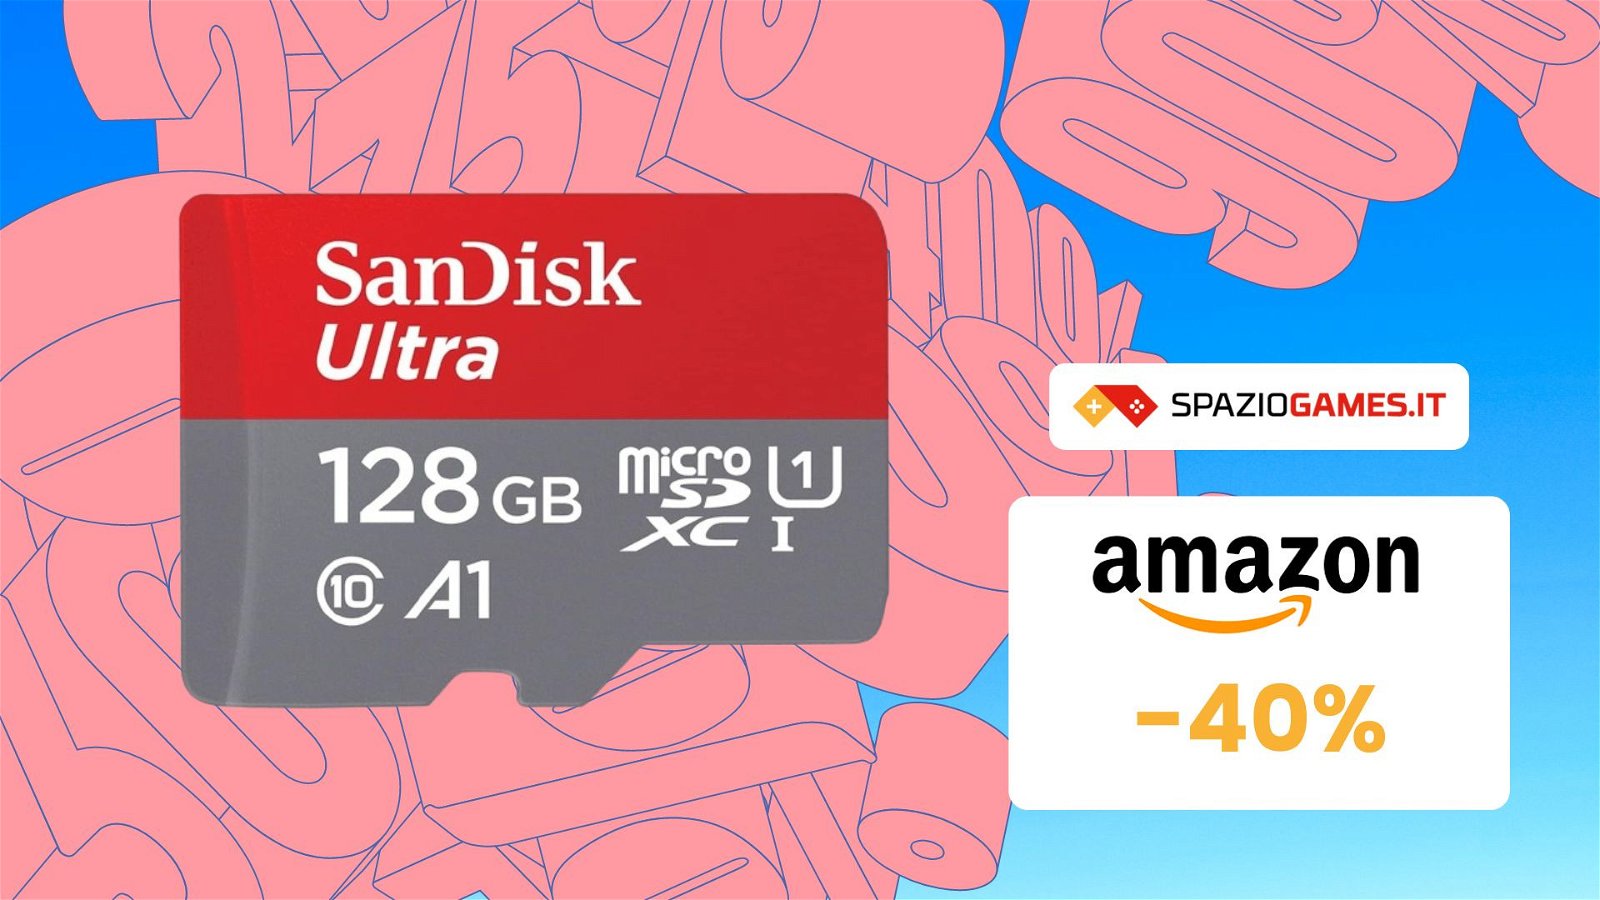 Prezzo PICCOLISSIMO su questa microSDXC SanDisk! La paghi soli 18€!